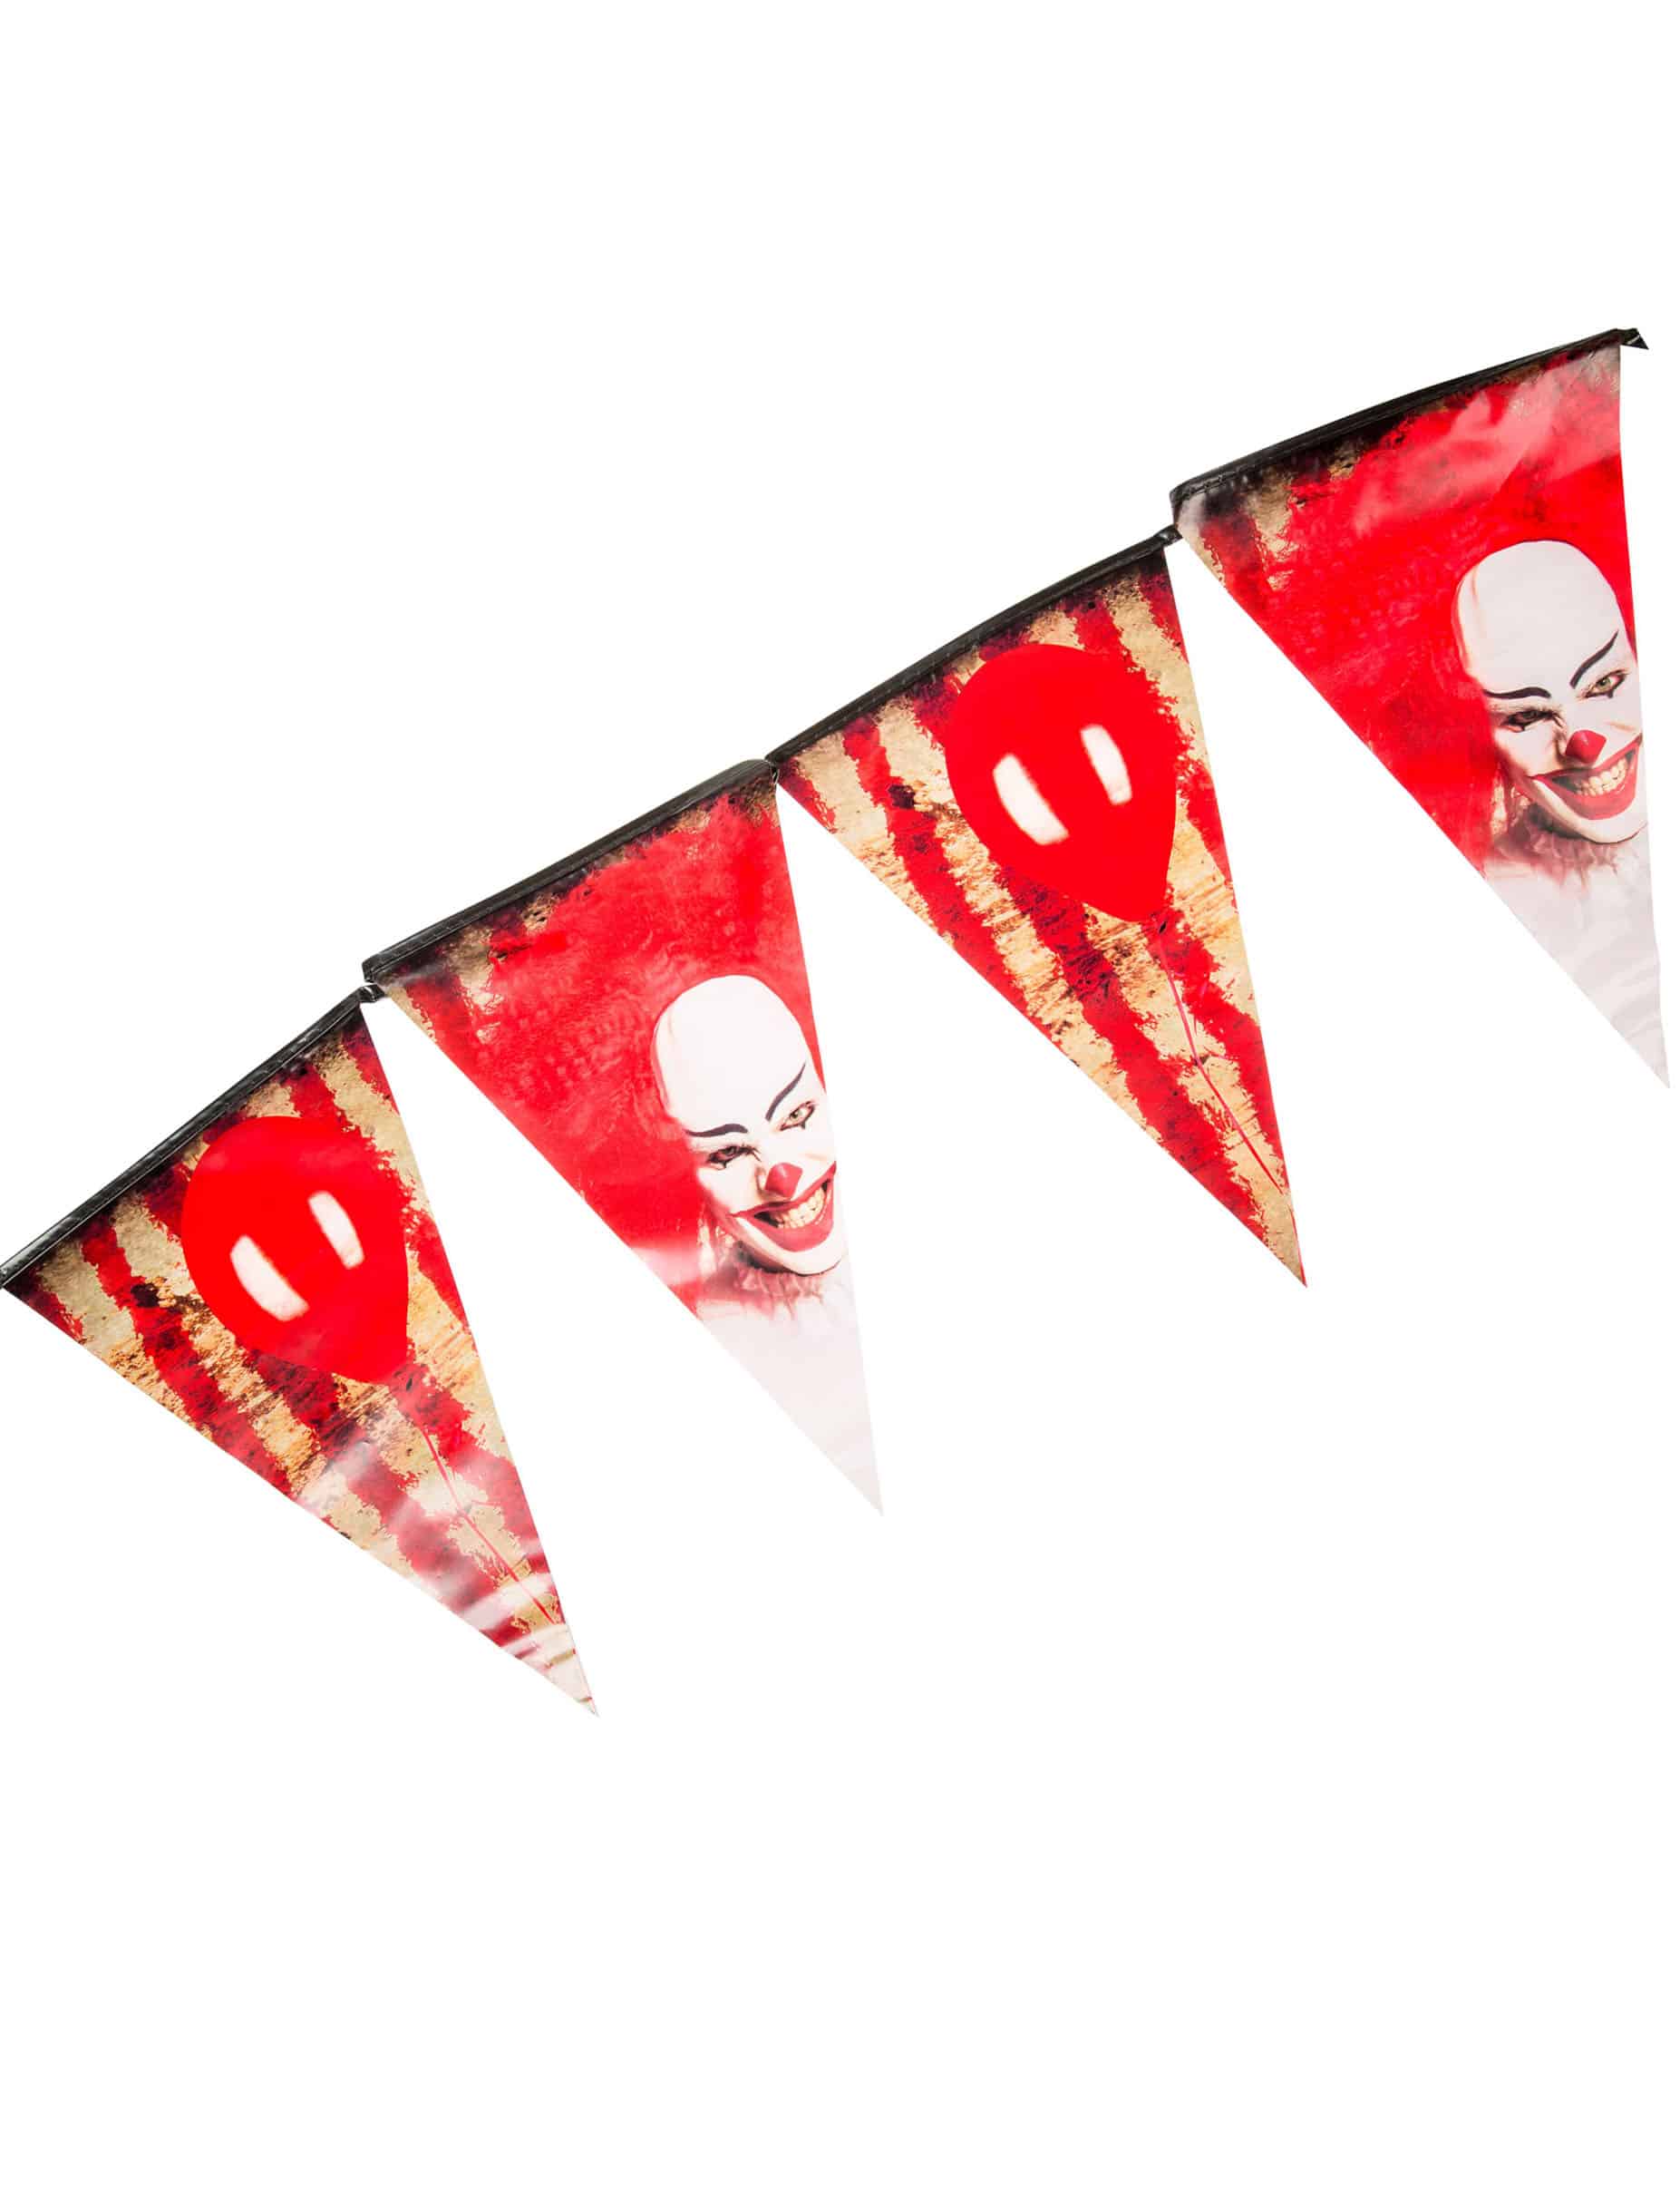 Wimpelkette Horror-Clown 6m